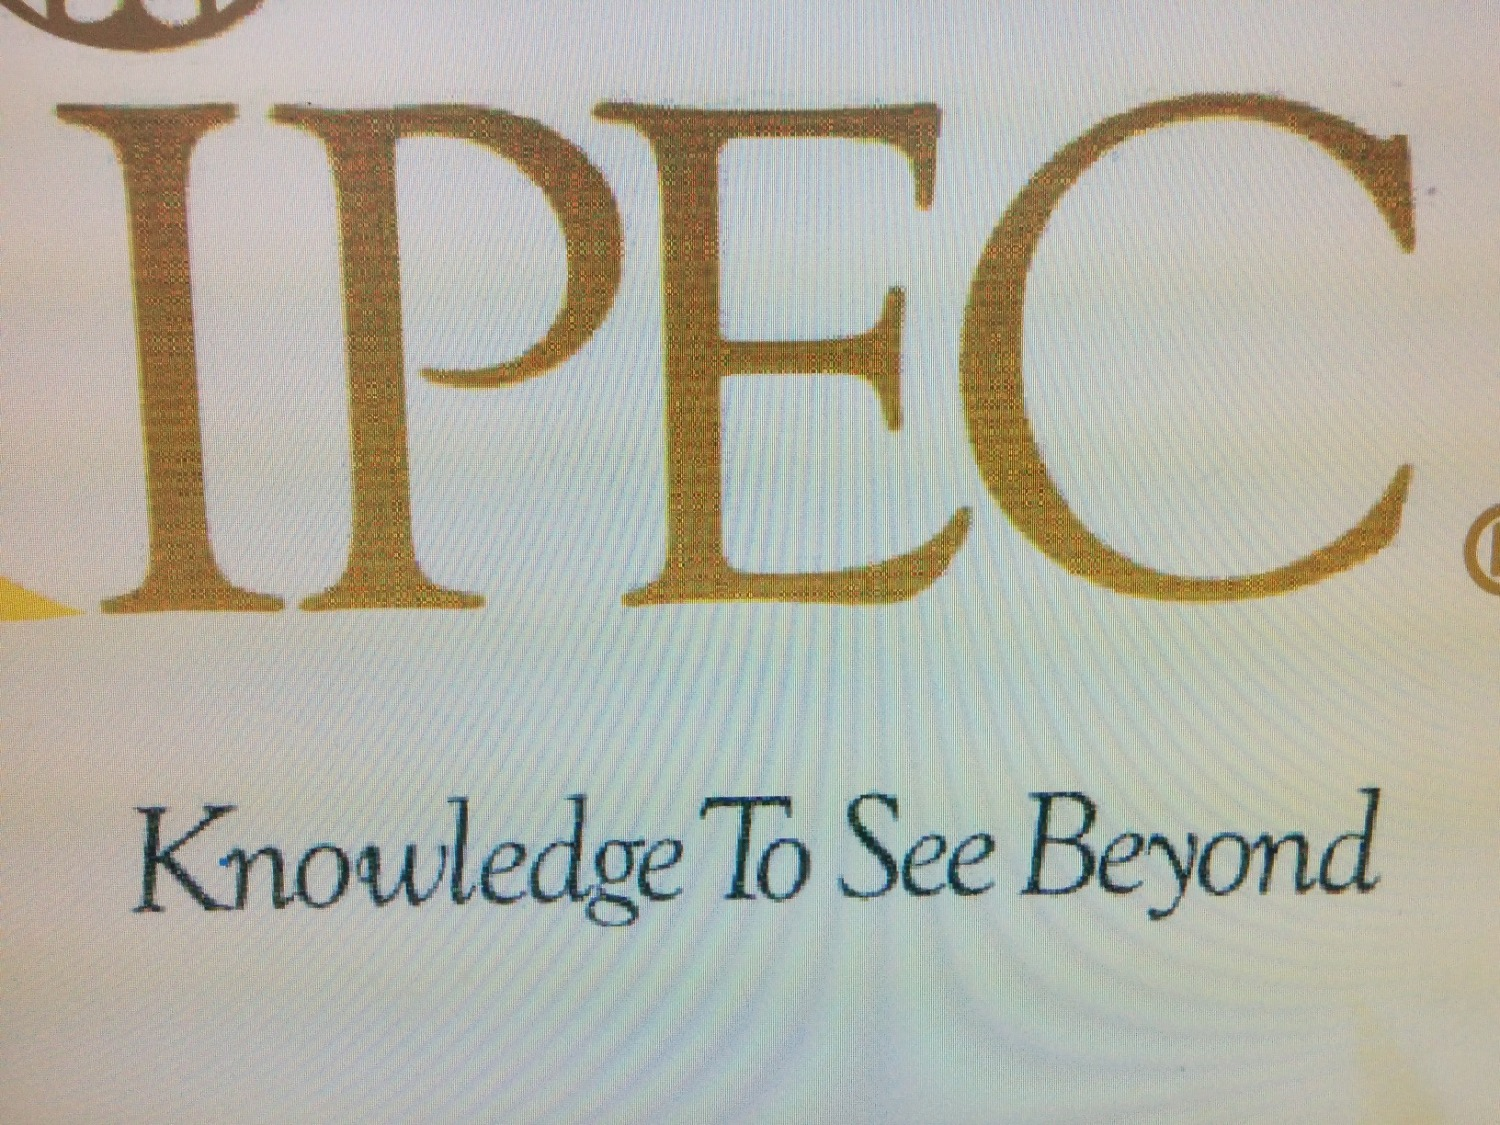 IPEC? what font is it?